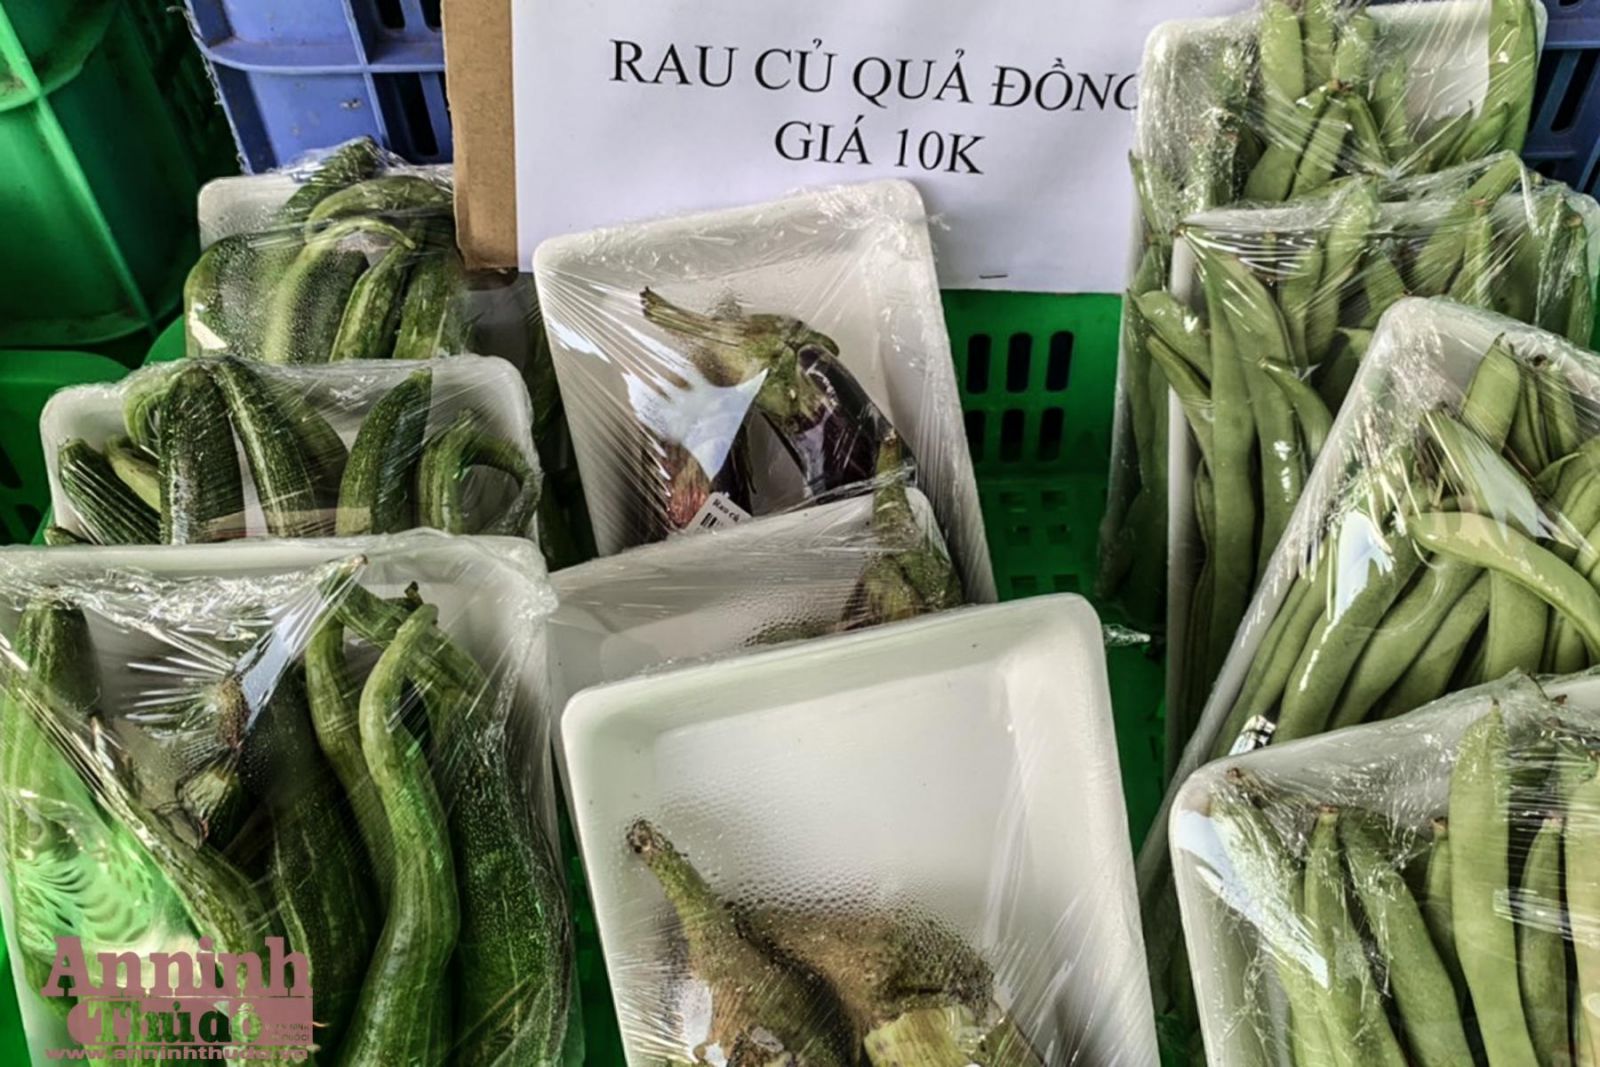 Gian hàng bán các loại rau củ quả đồng giá 10.000 đồng